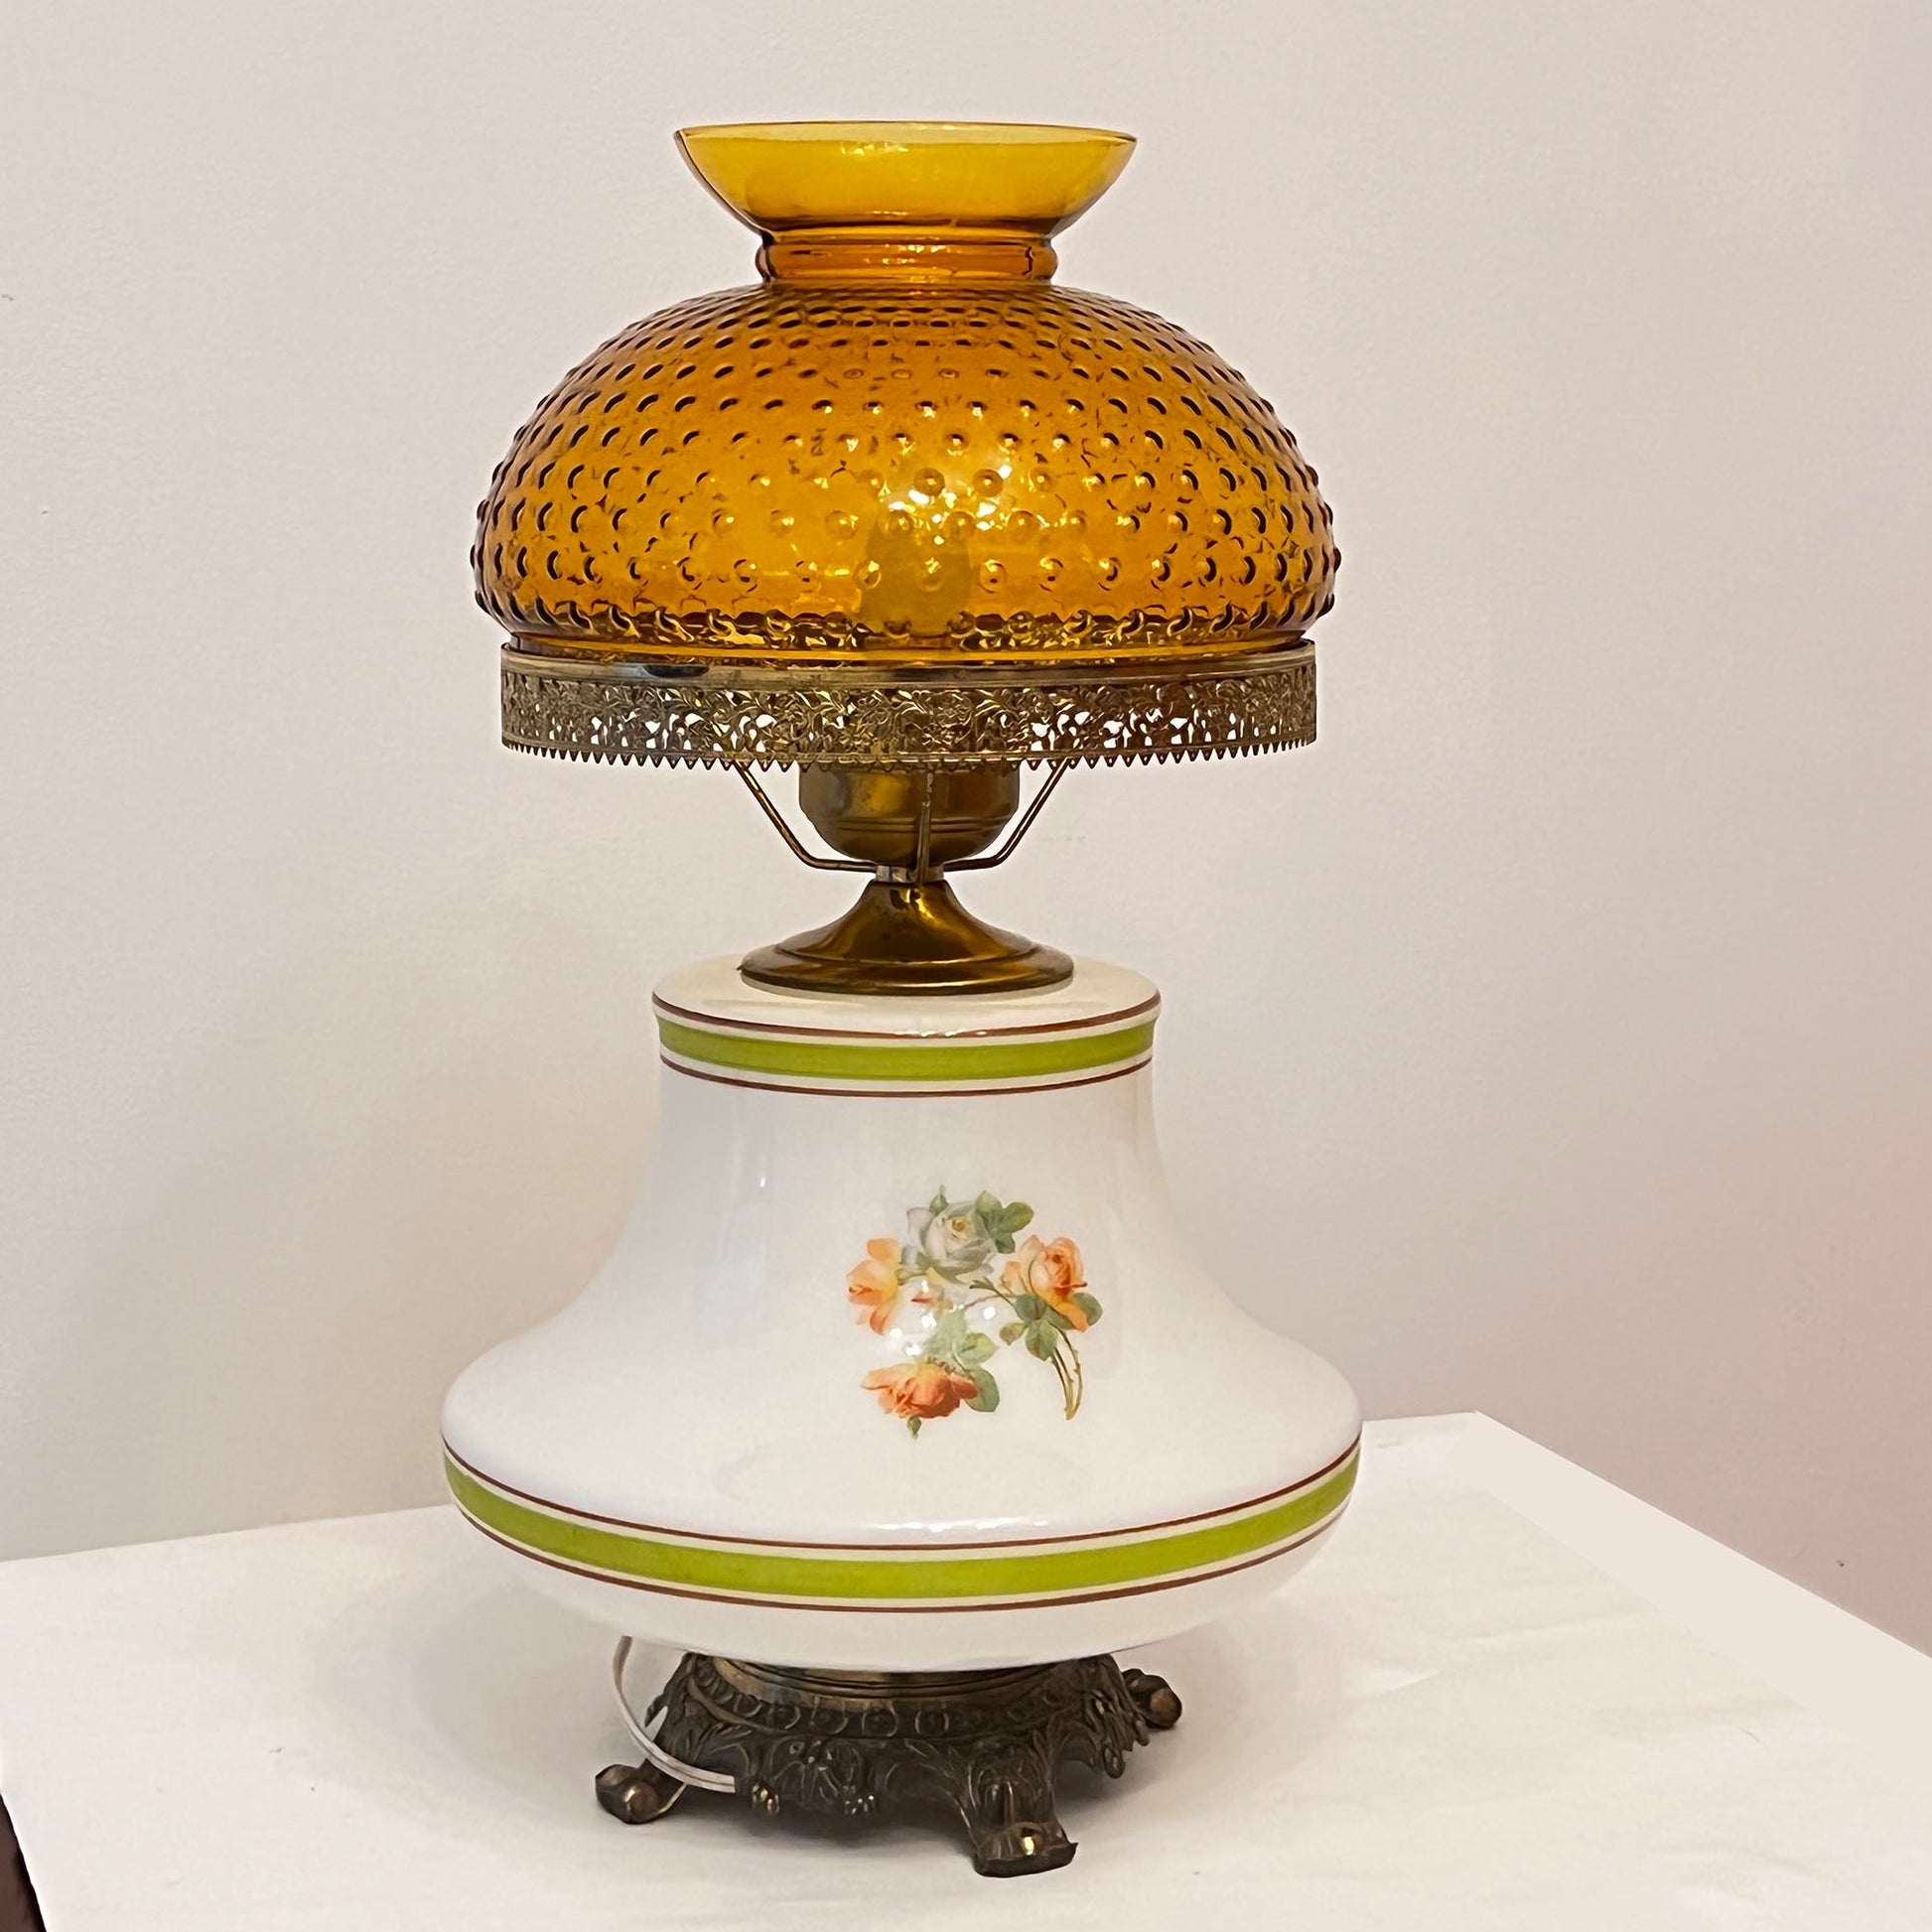 Antique hurricane lamp